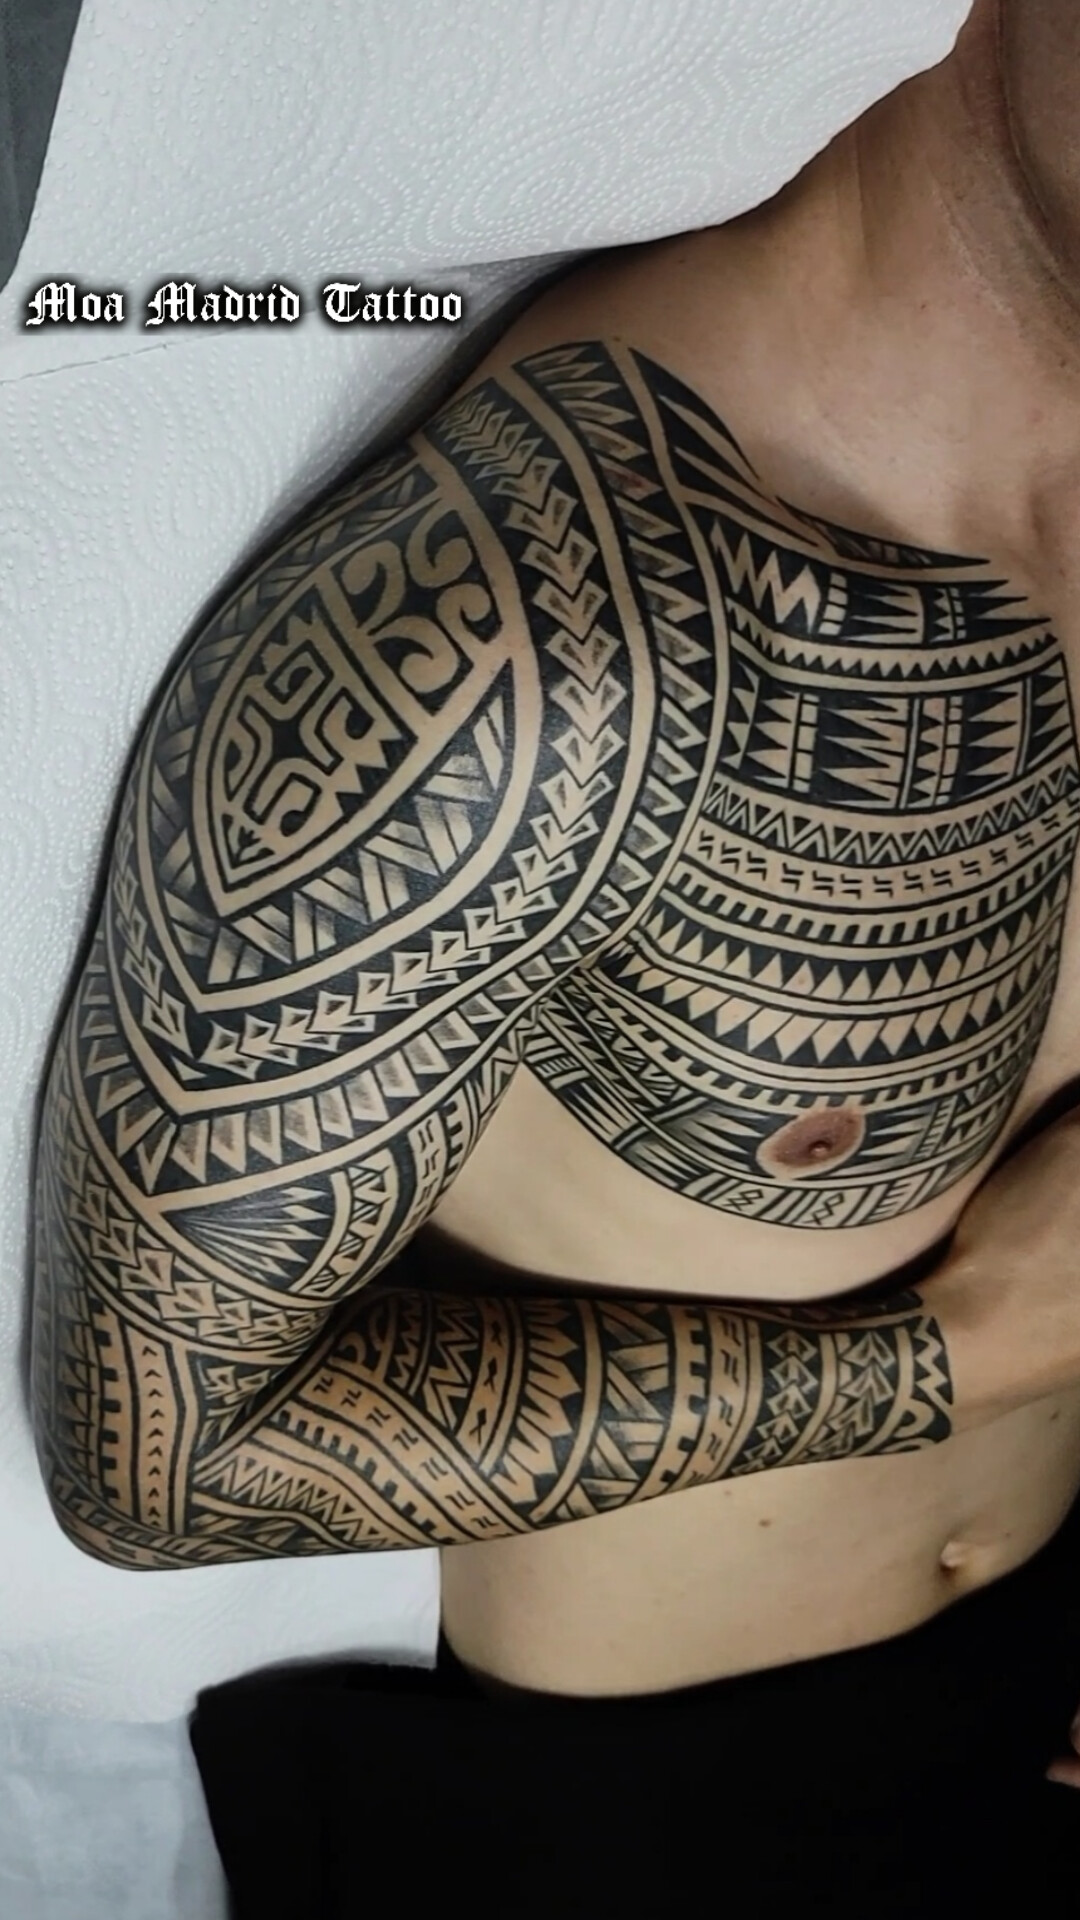 Tatuaje con diseño personalizado, estilo samoano, hecho en Madrid